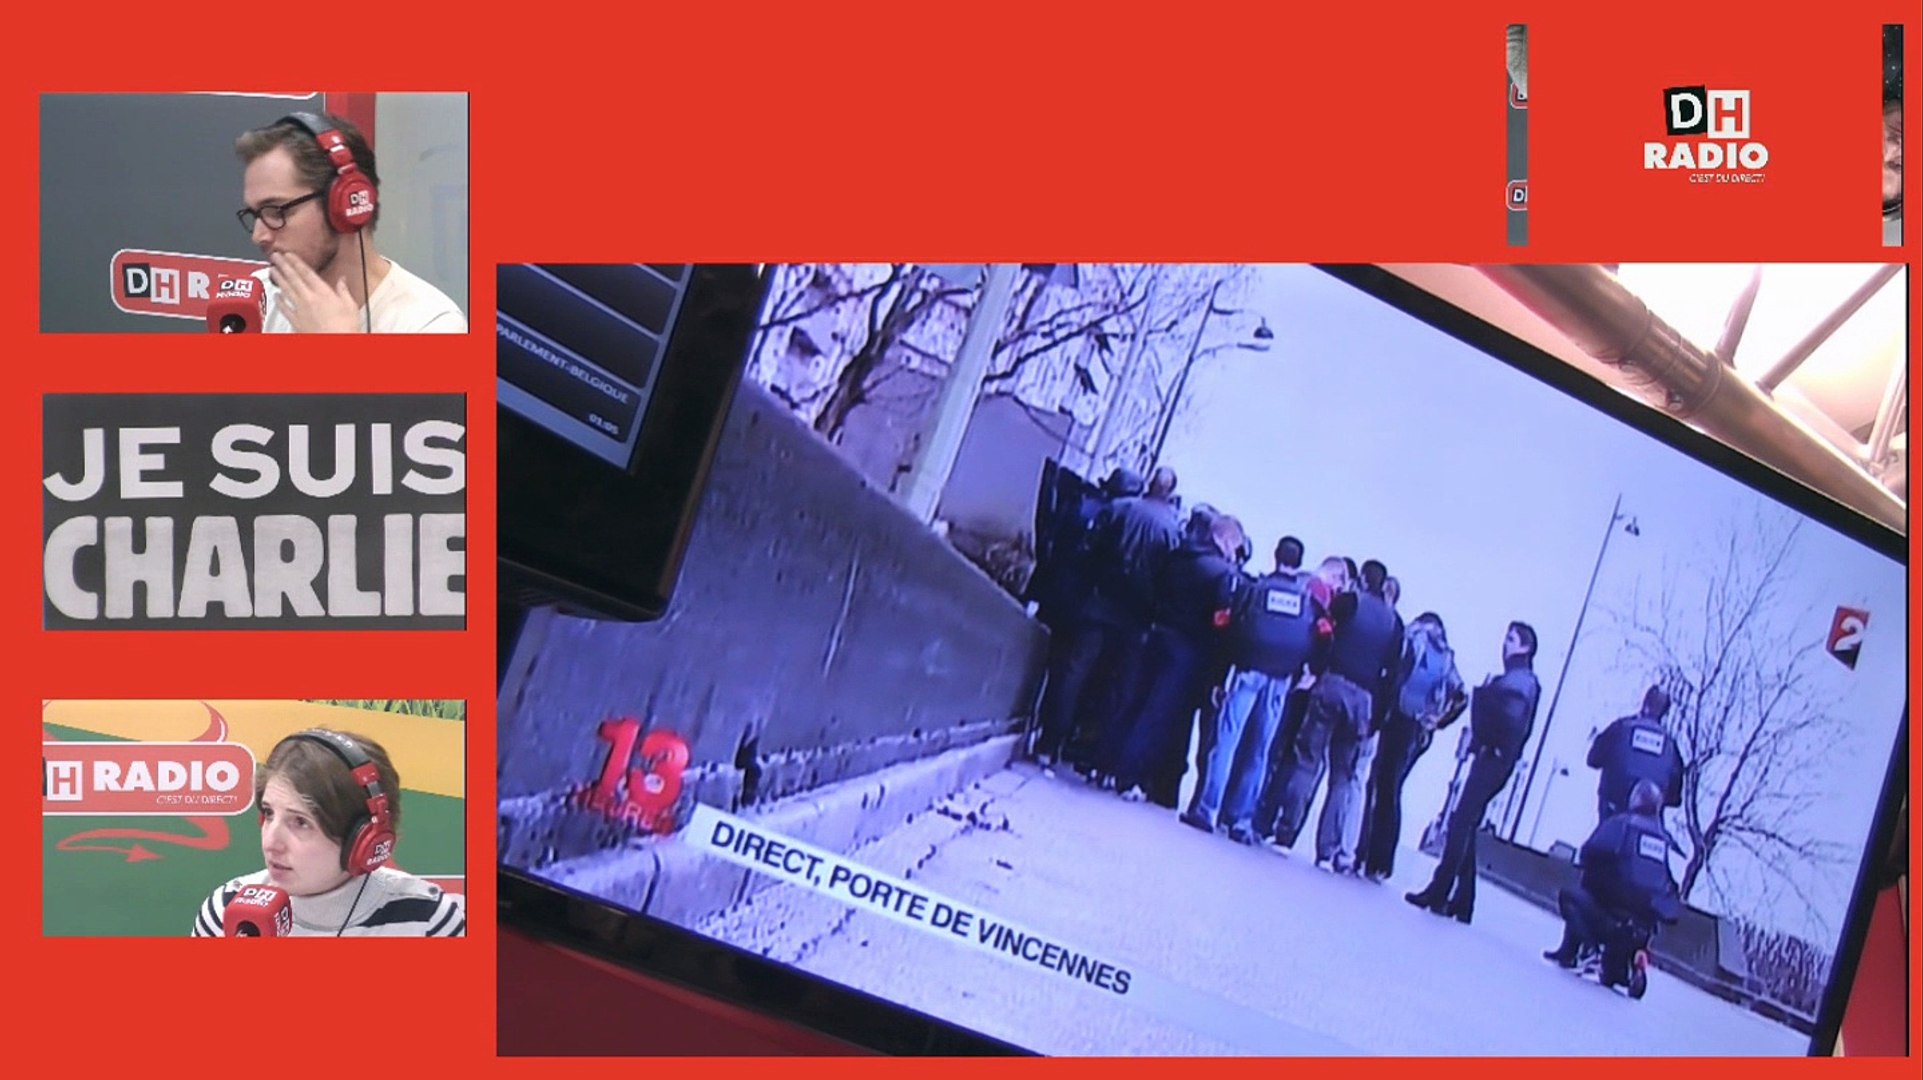 DH RADIO - Notre correspondant Julien Balboni en direct depuis la prise  d'otage de la porte de Vincennes - Vidéo Dailymotion